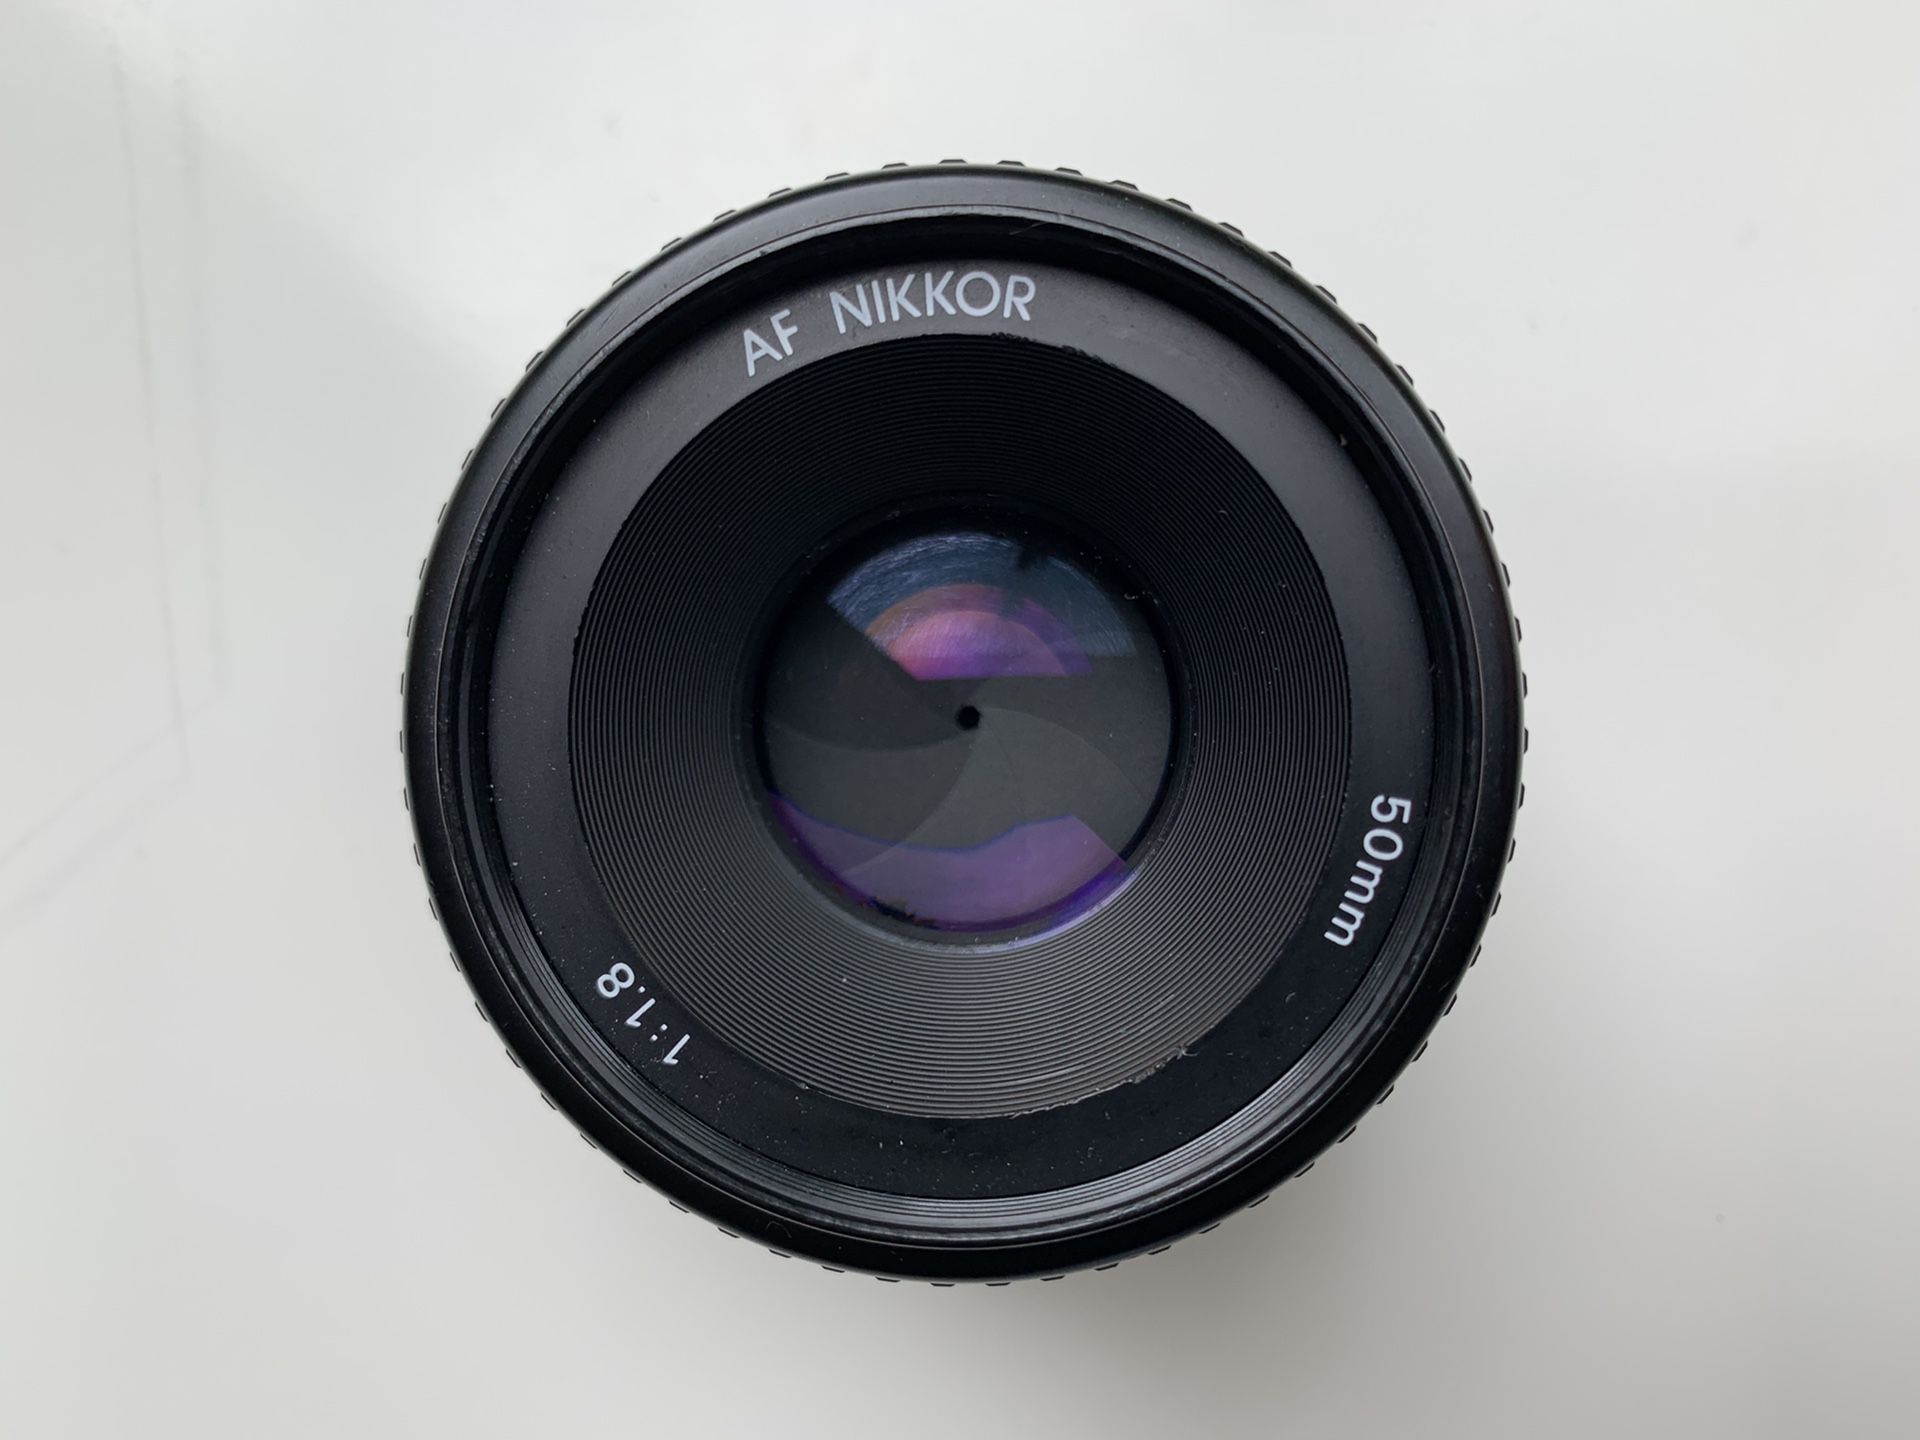 Nikon AF Nikkor 50mm f/1.8D Lens - Black